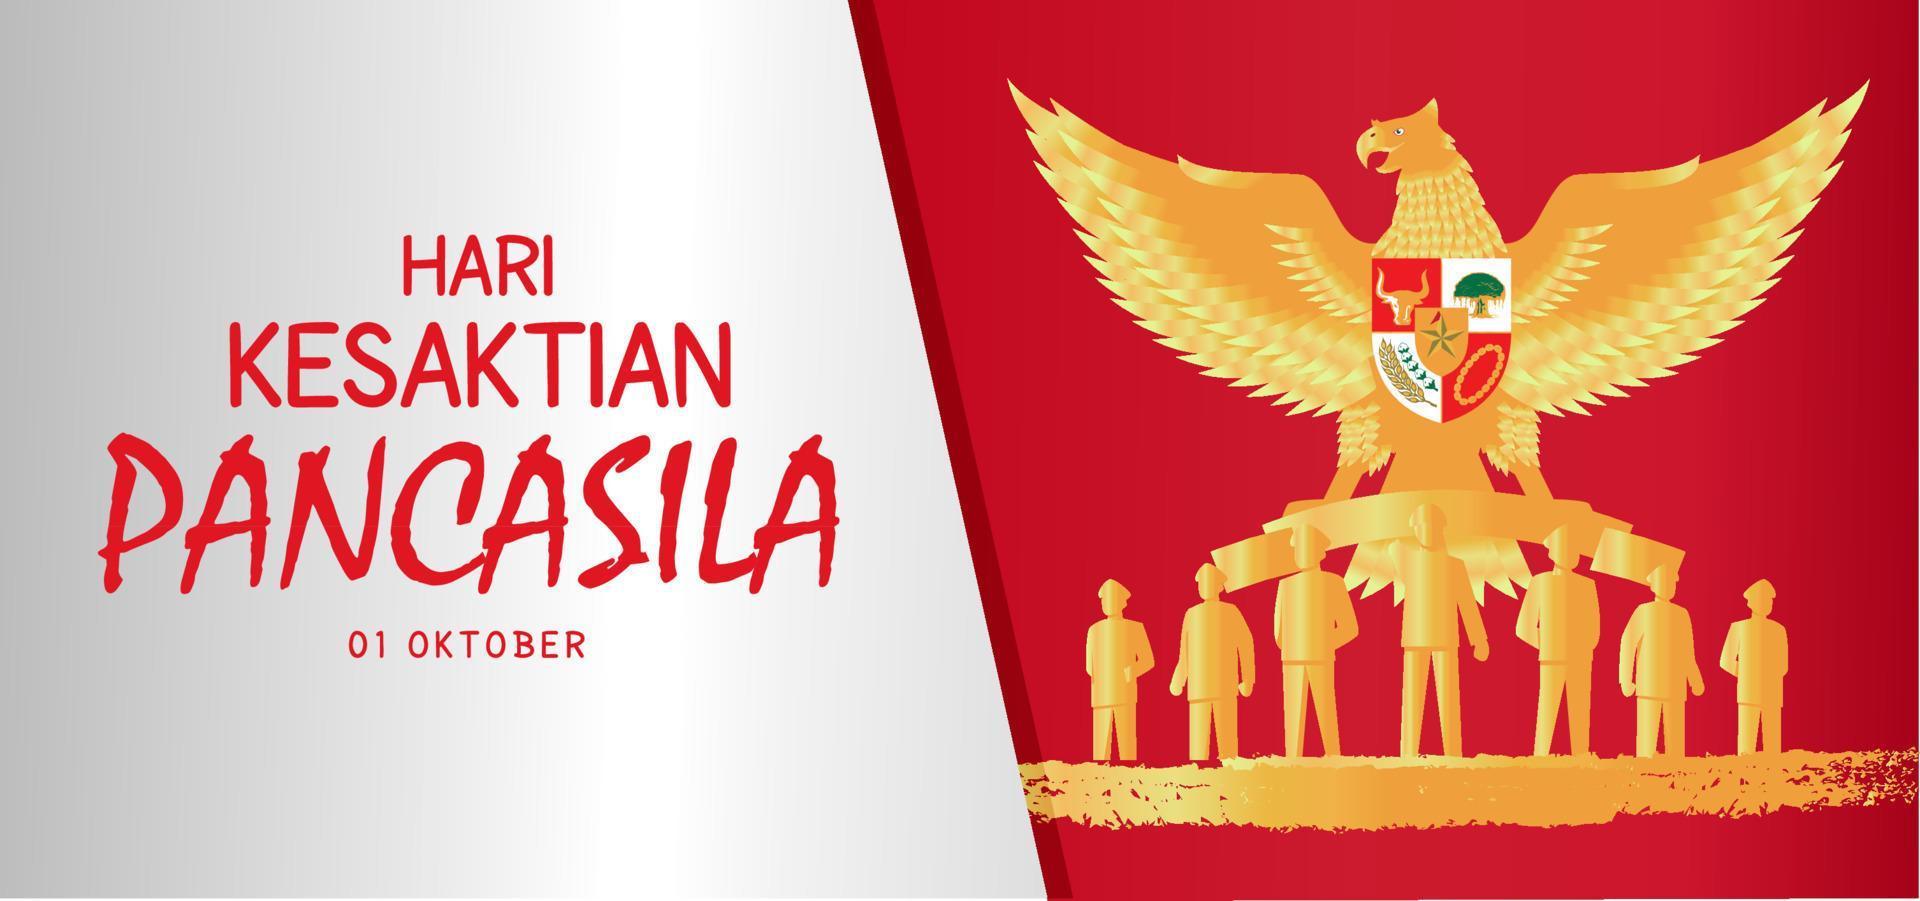 hari kesaktian pancasila, indonesischer feiertag pancasila tag illustration.übersetzung 1. oktober, glücklicher pancasila tag. geeignet für Grußkarten und Banner vektor